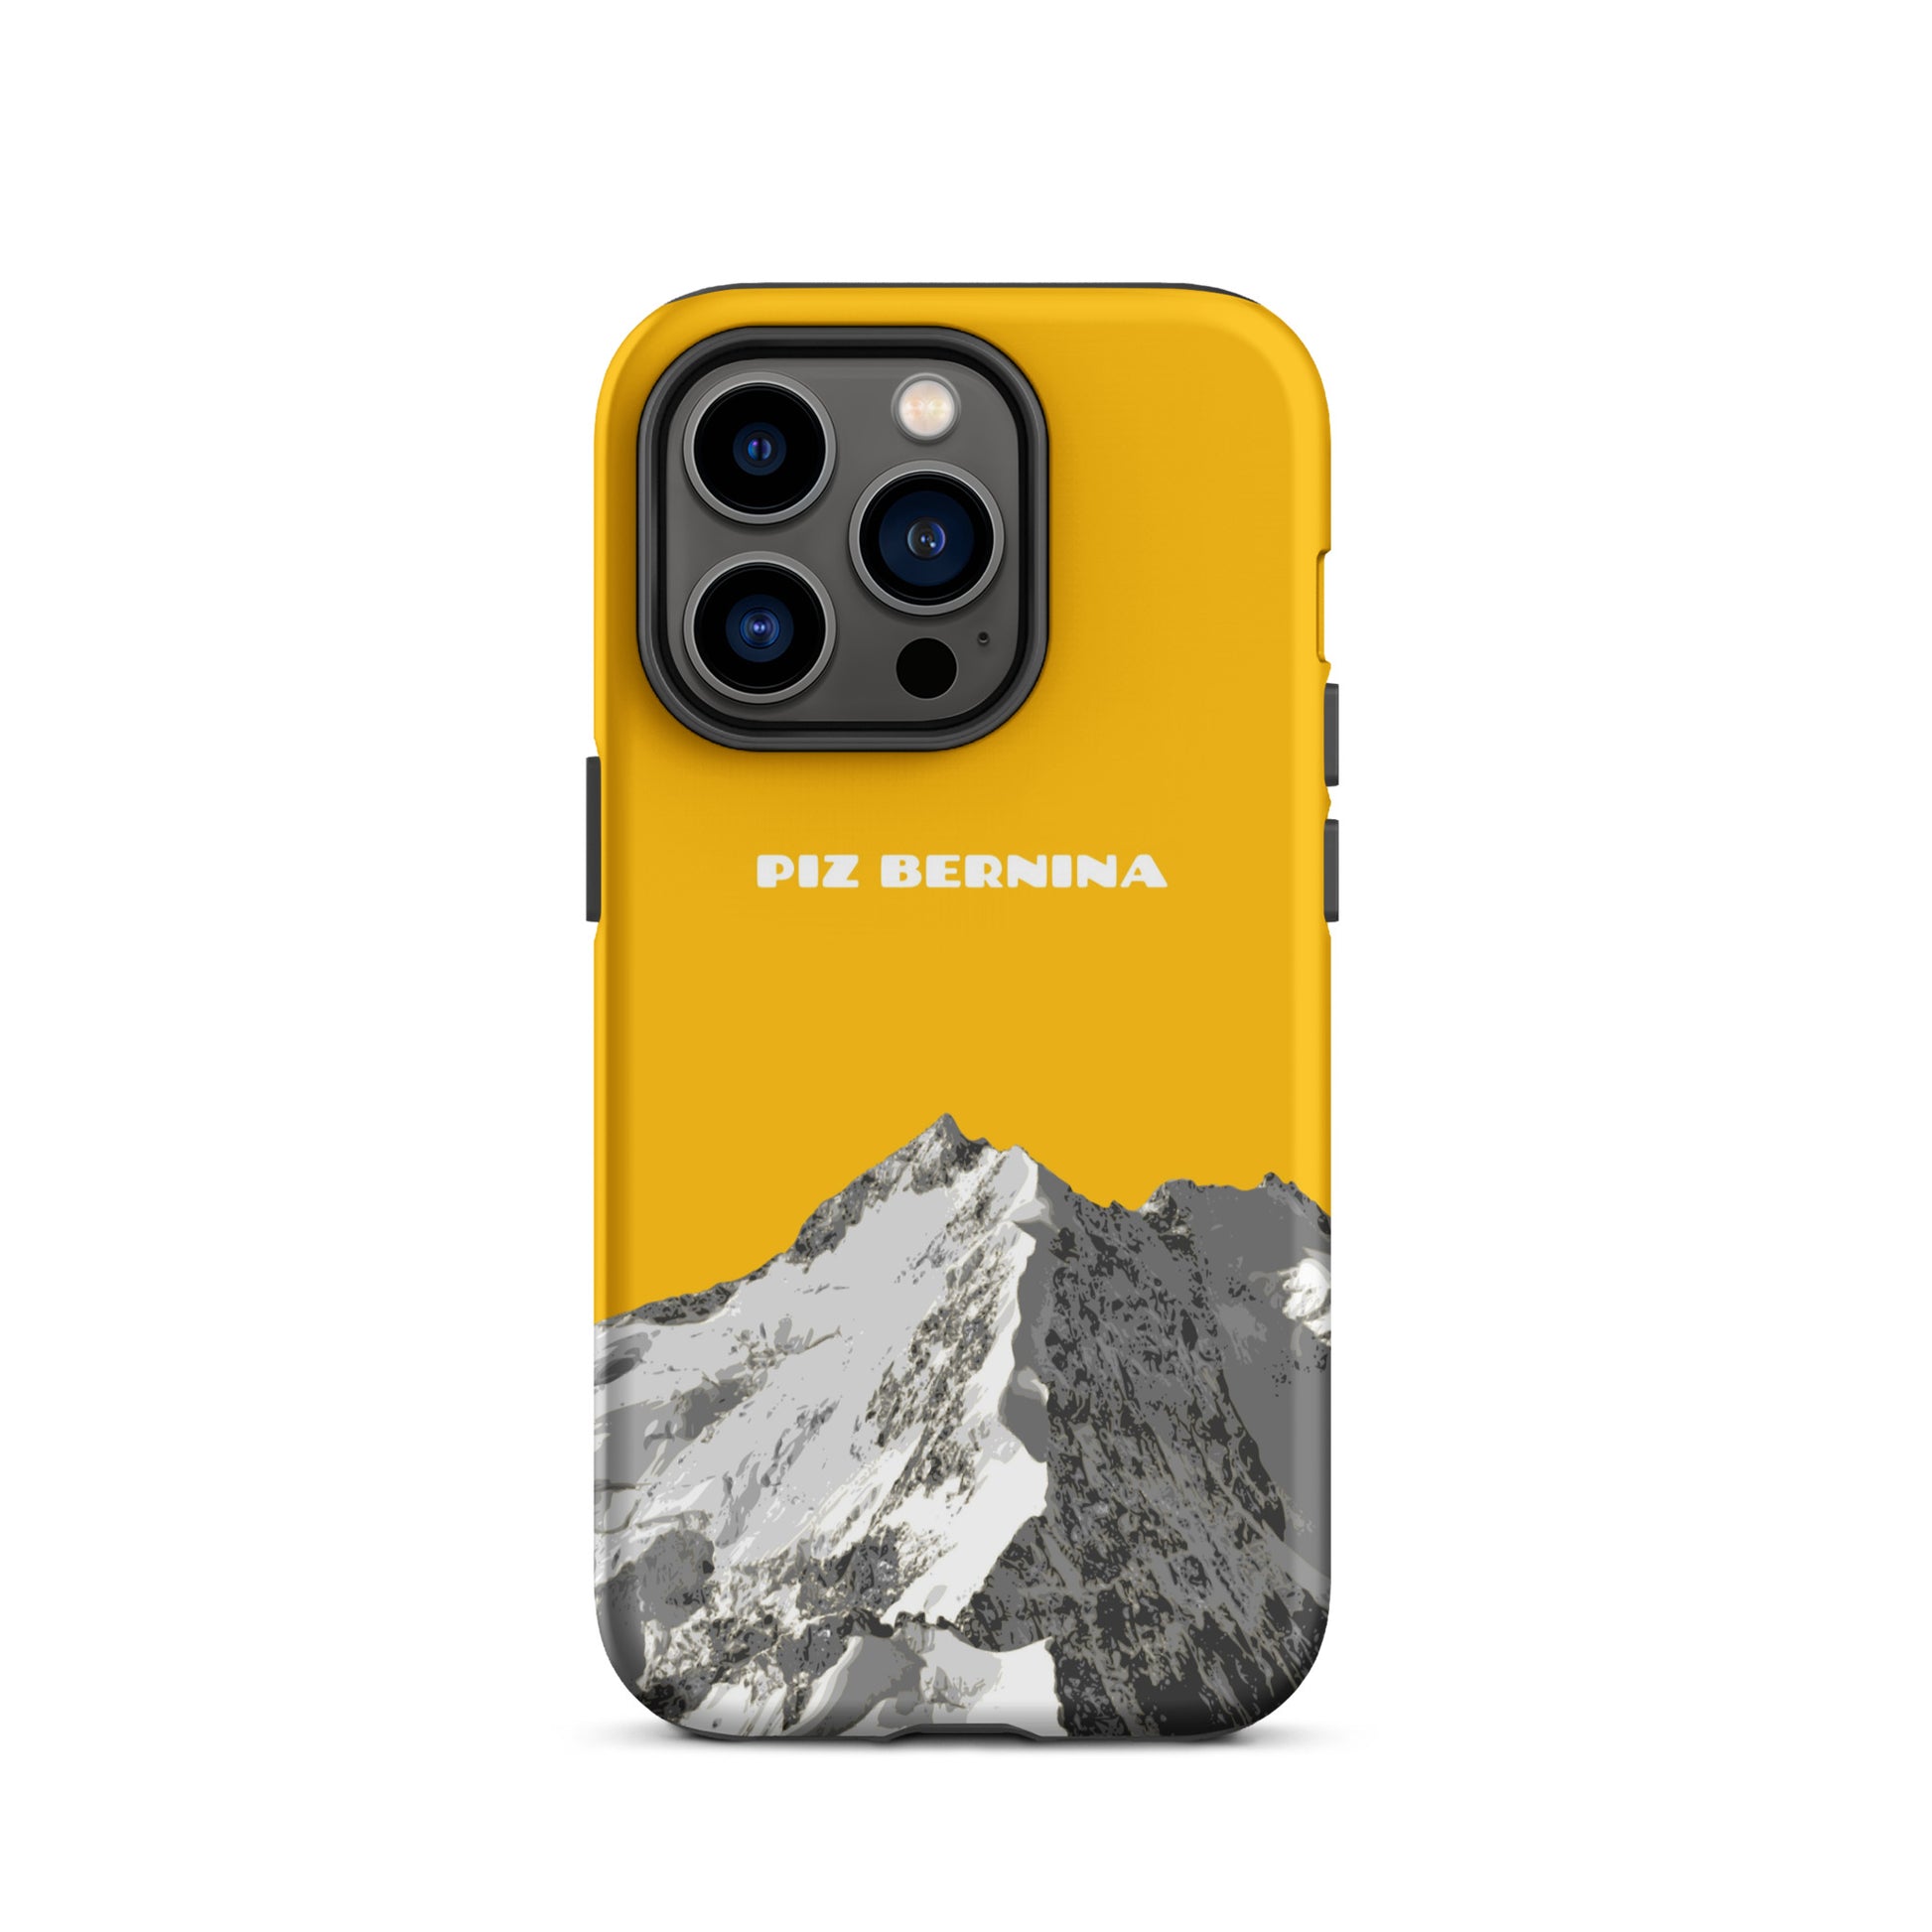 Hülle für das iPhone 14 Pro von Apple in der Farbe Goldgelb, dass den Piz Bernina in Graubünden zeigt.